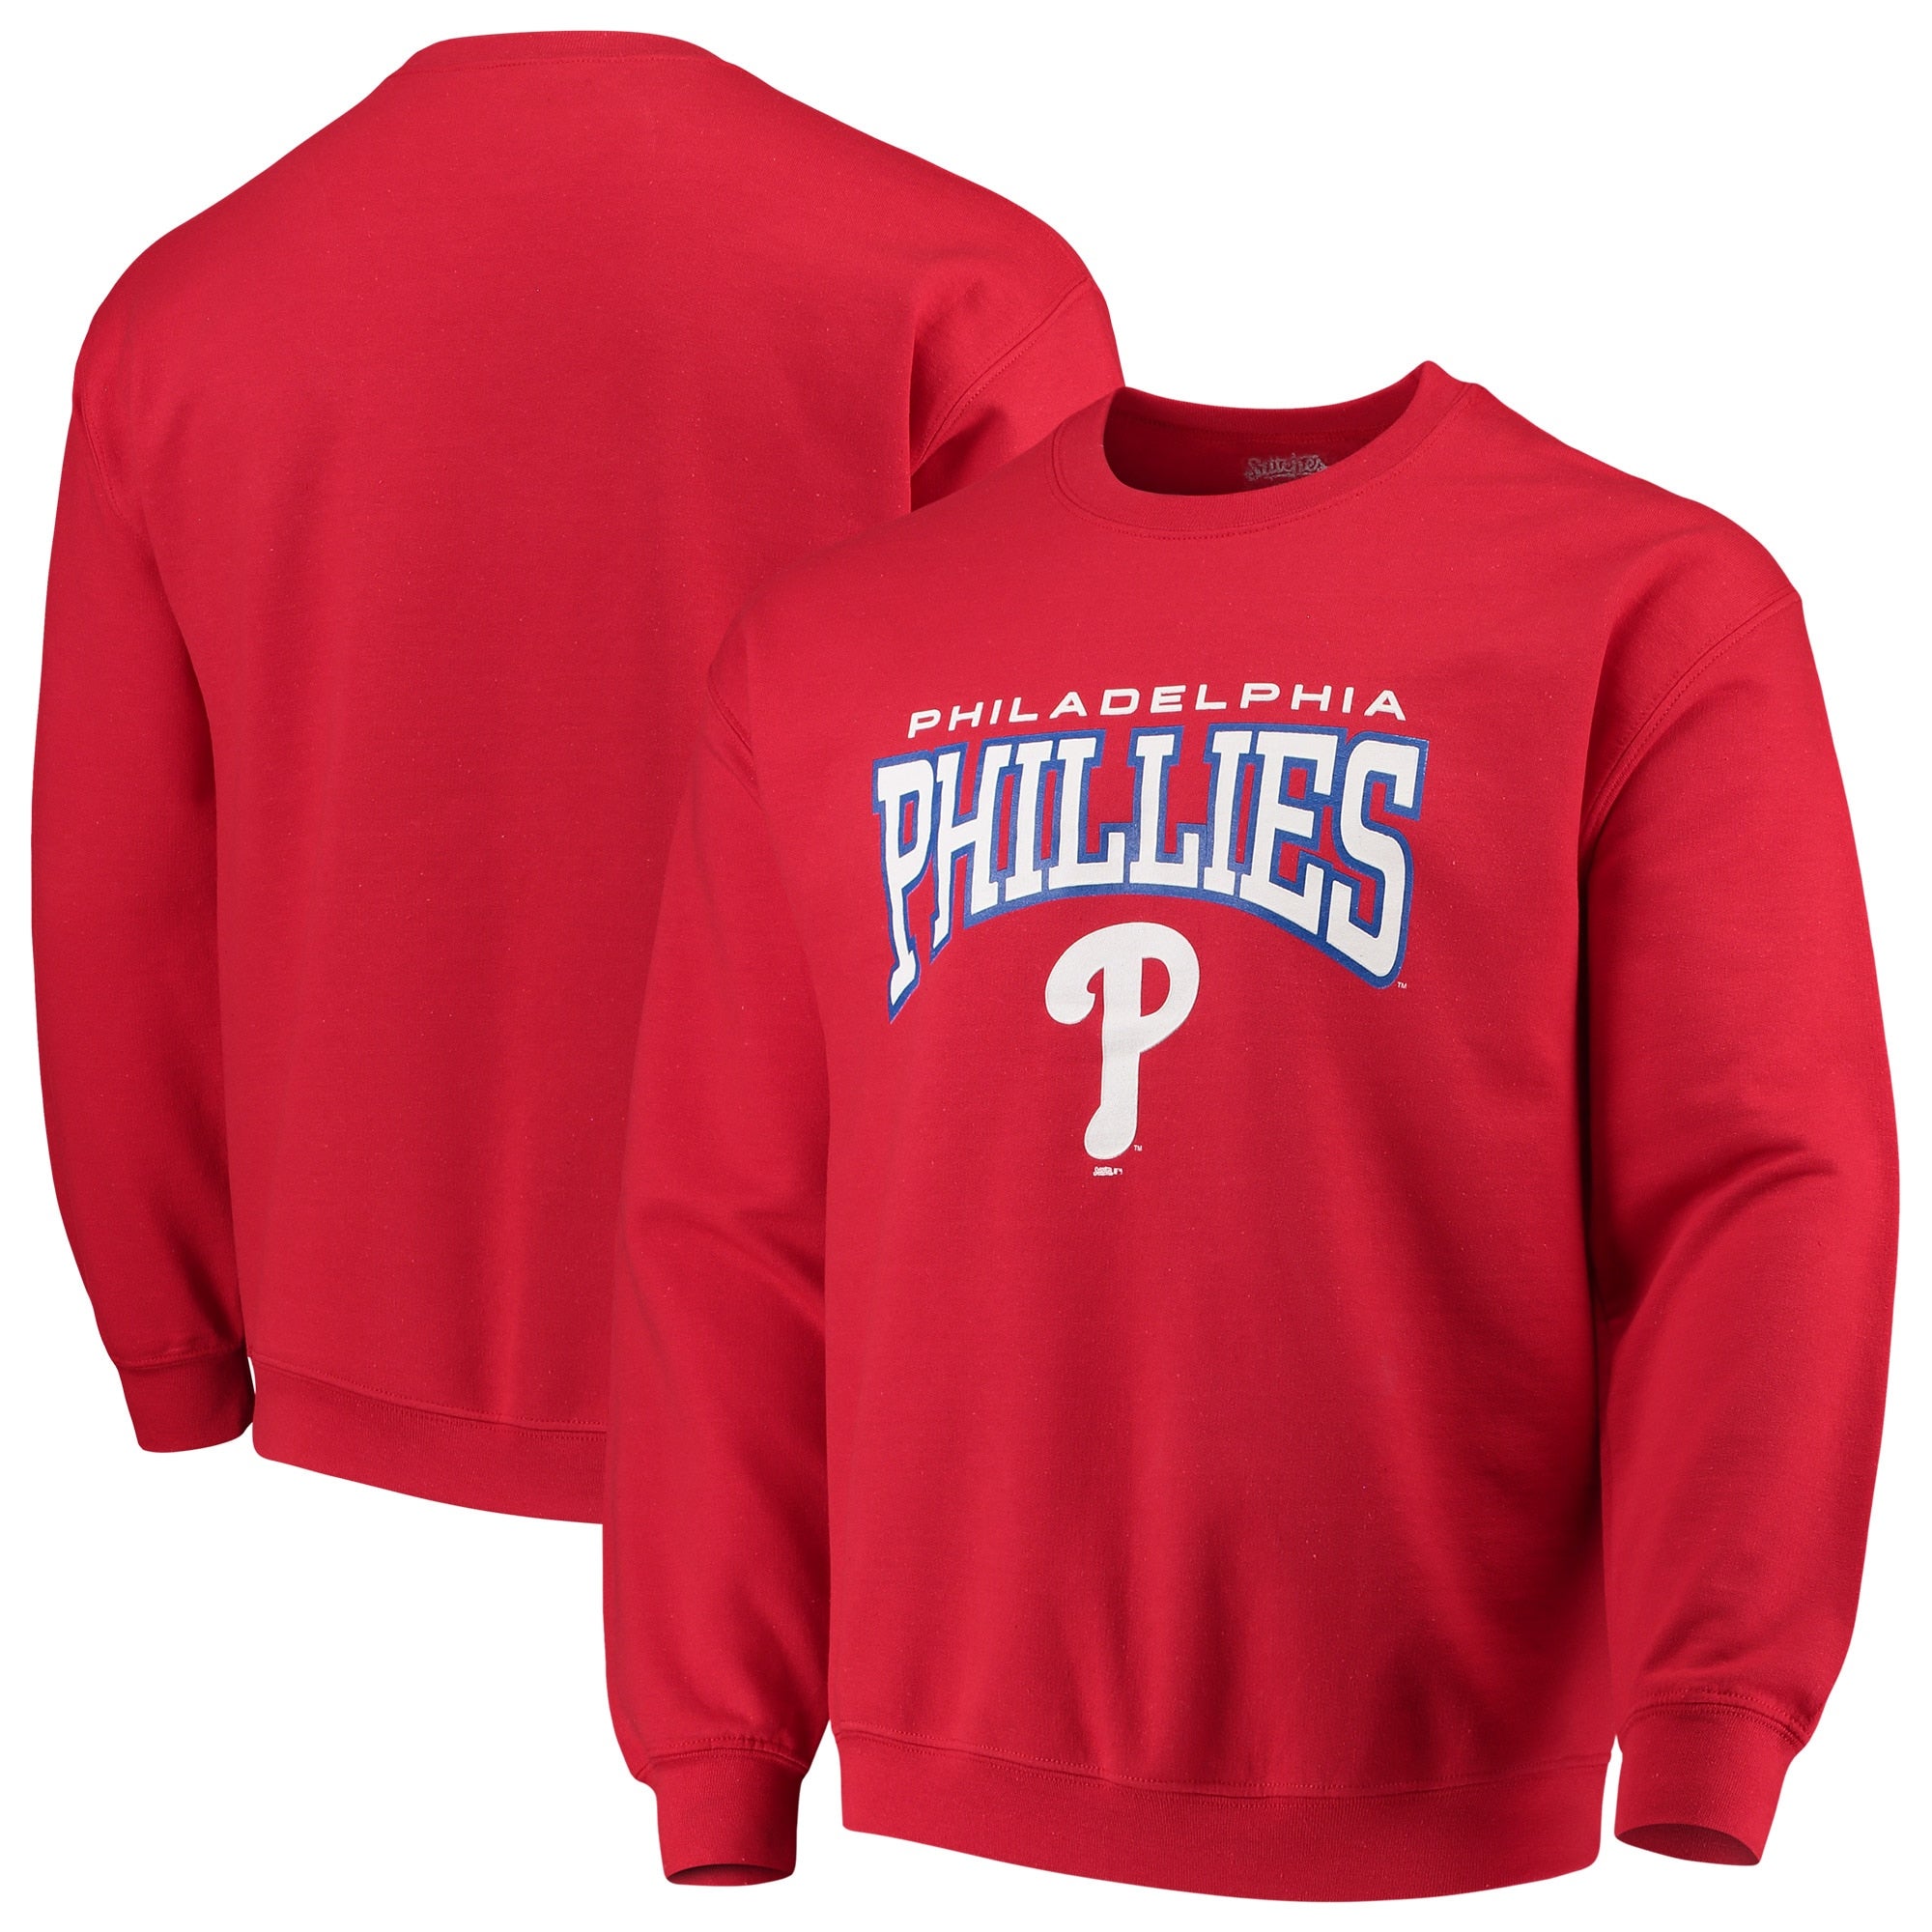 Stitches Phillies Pullover Crew Neck Sweatshirt - Men's